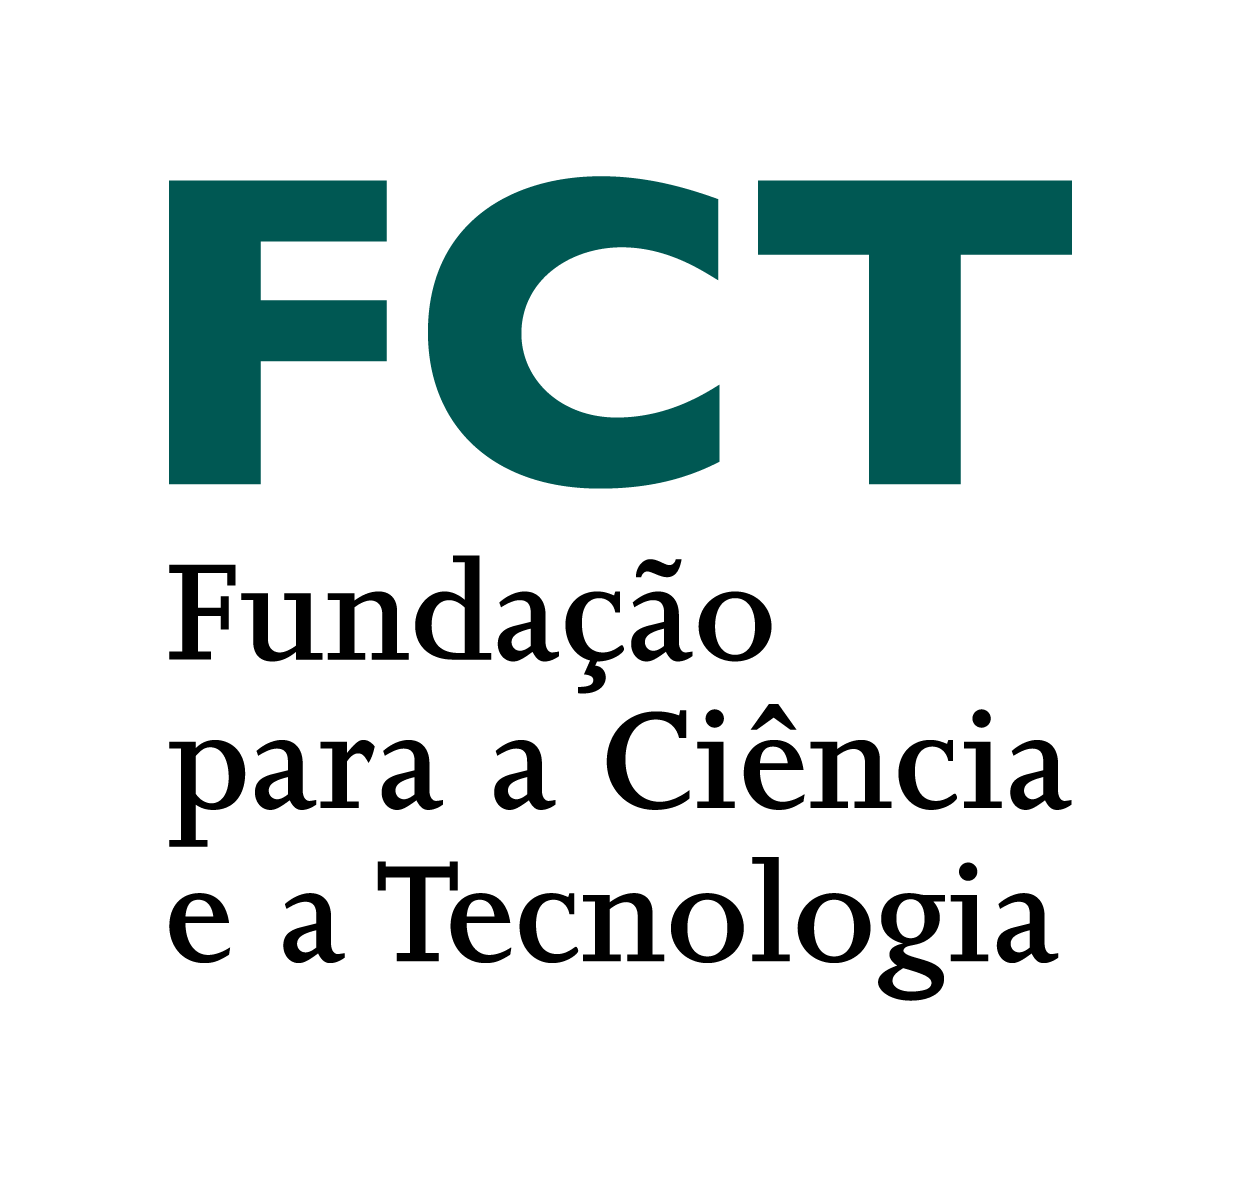 Fundo de Apoio à Comunidade Científica (FACC) — FCT